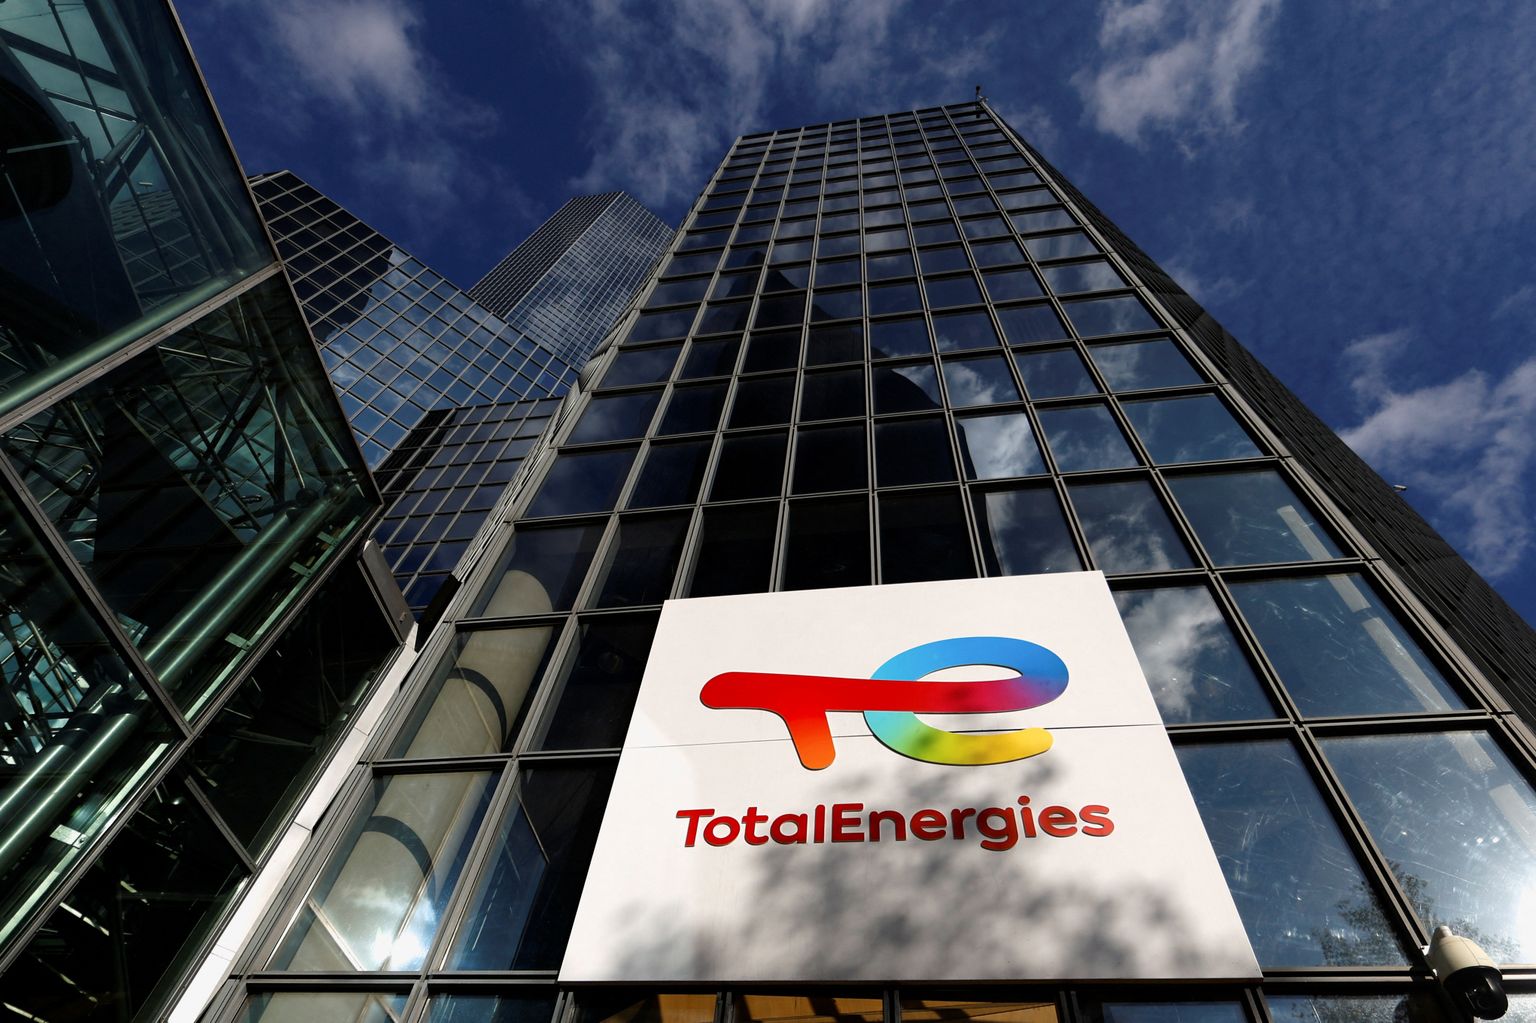 Prantsuse energiahiiu TotalEnergies peakorter ja logo.